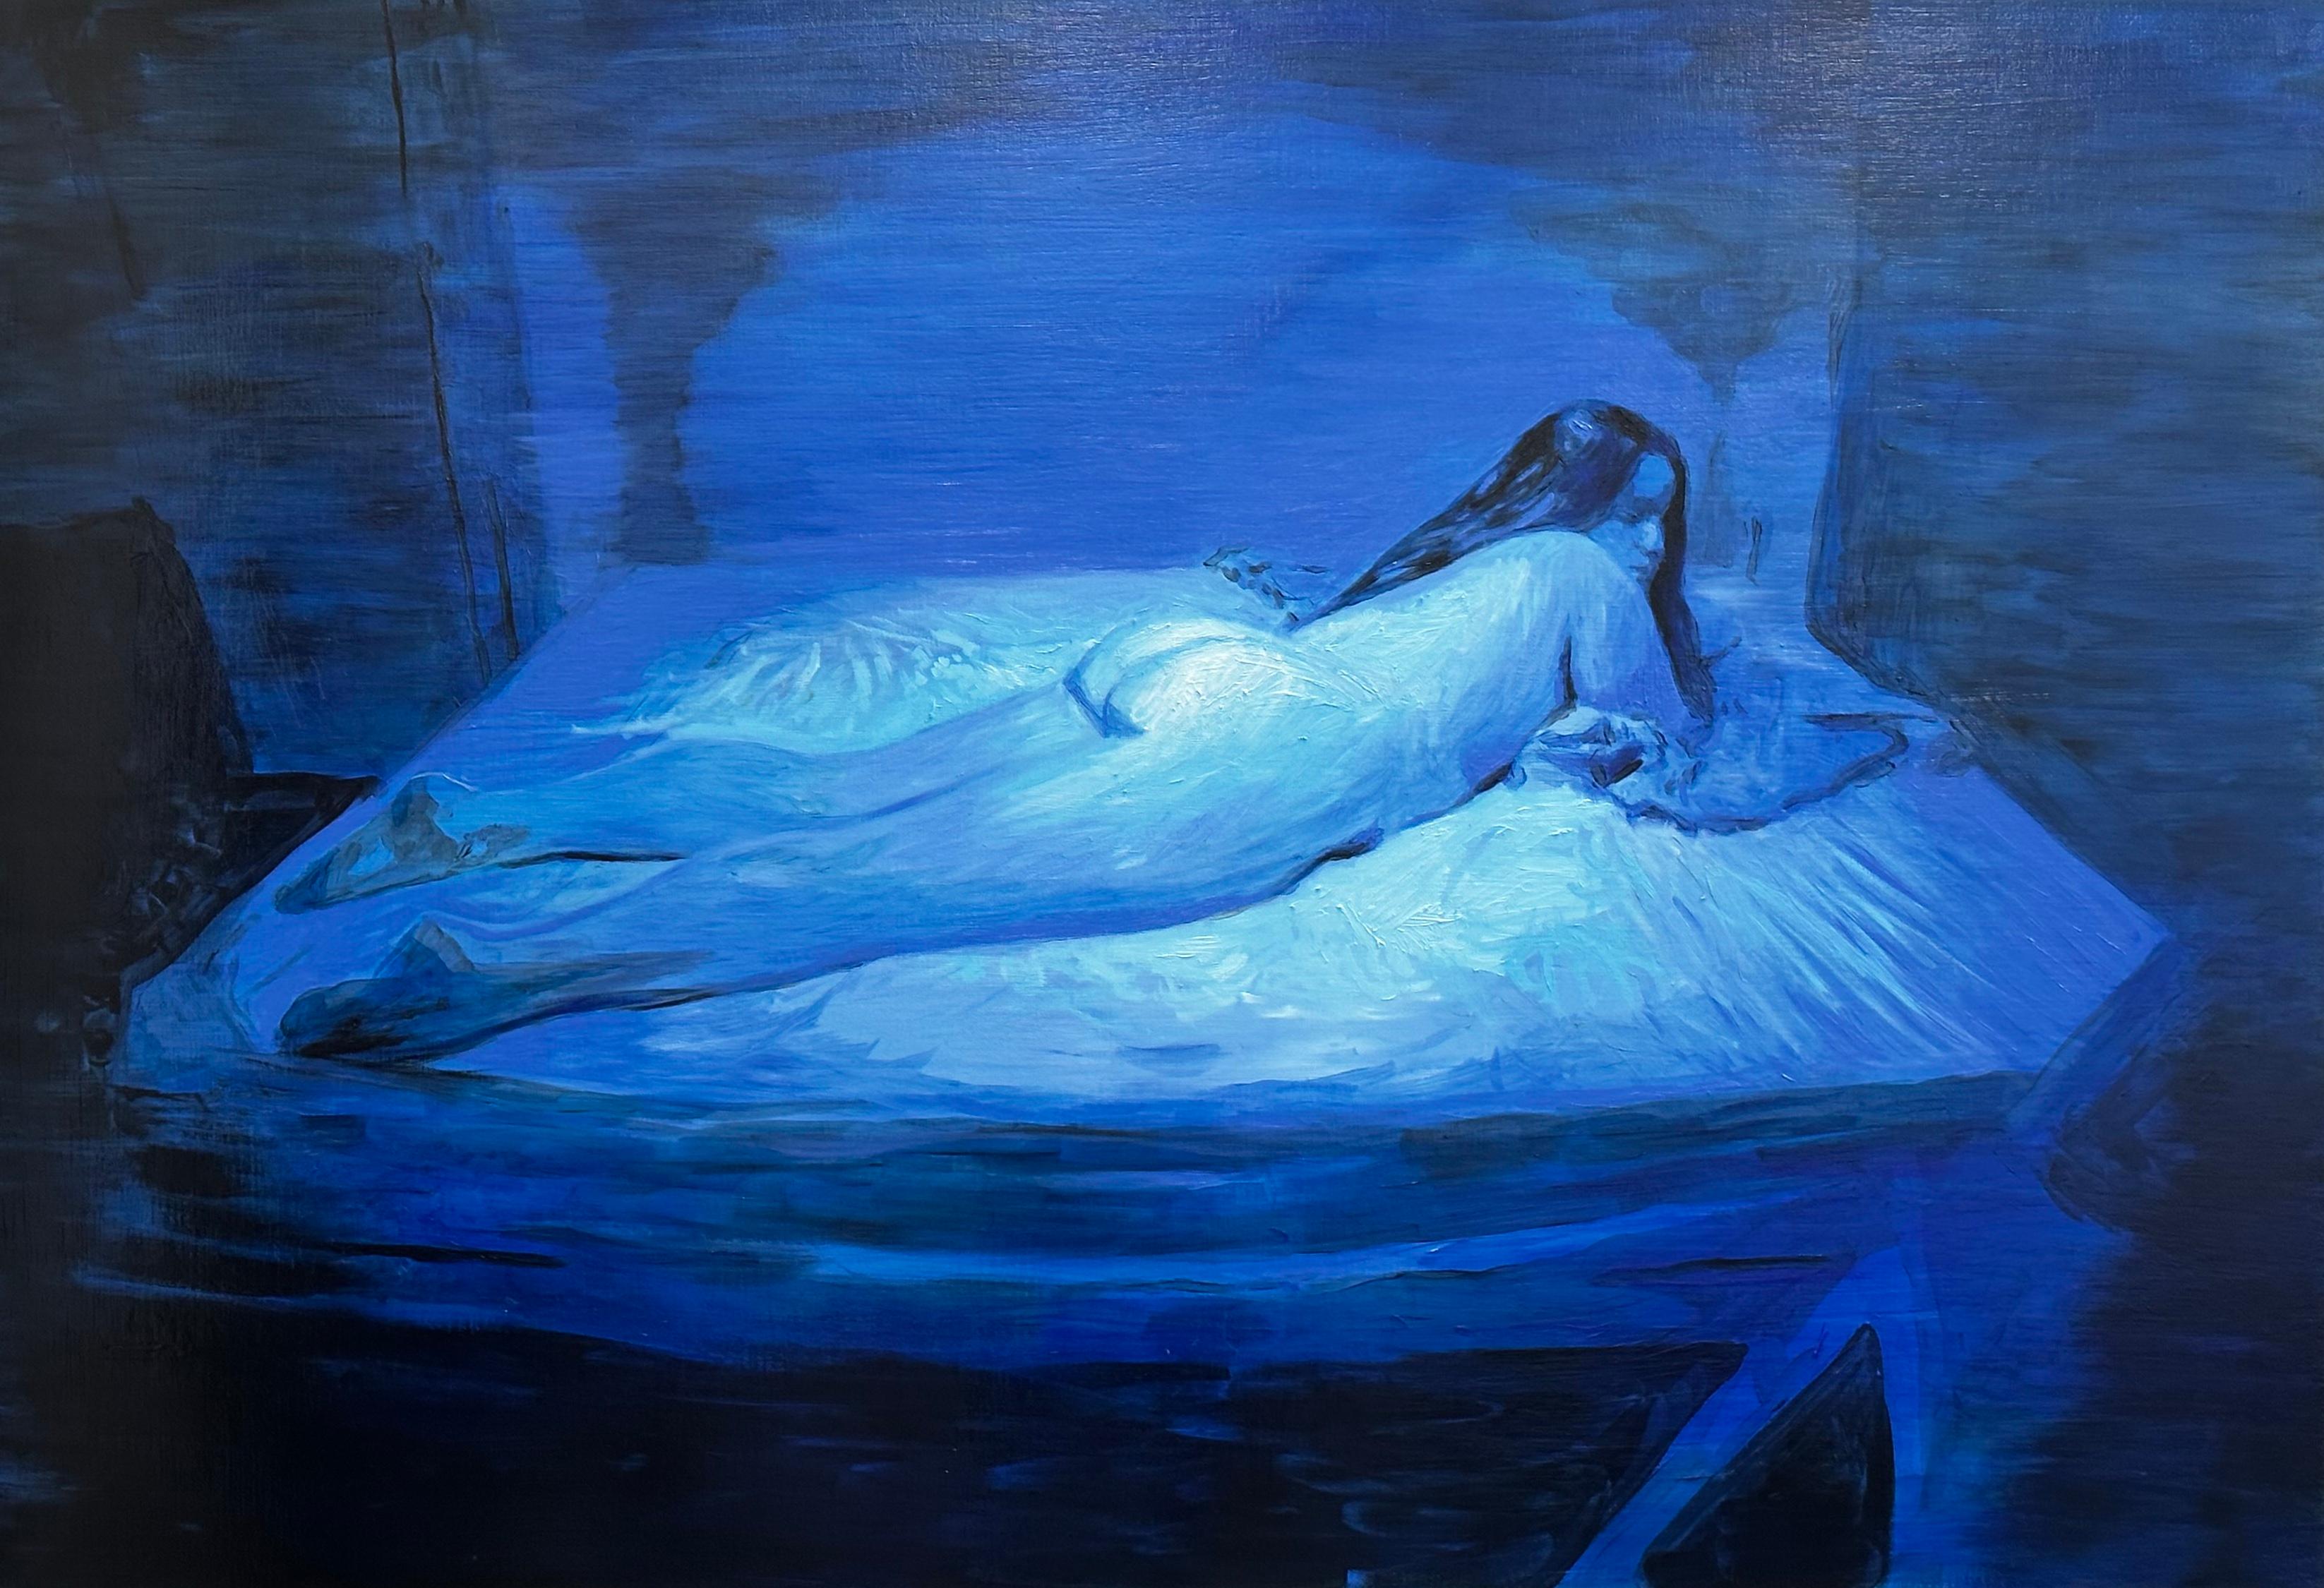 Nude Painting Nicolás Guzmán - Sans titre - Femme, portrait nu, peinture à l'huile figurative, bleu et noir